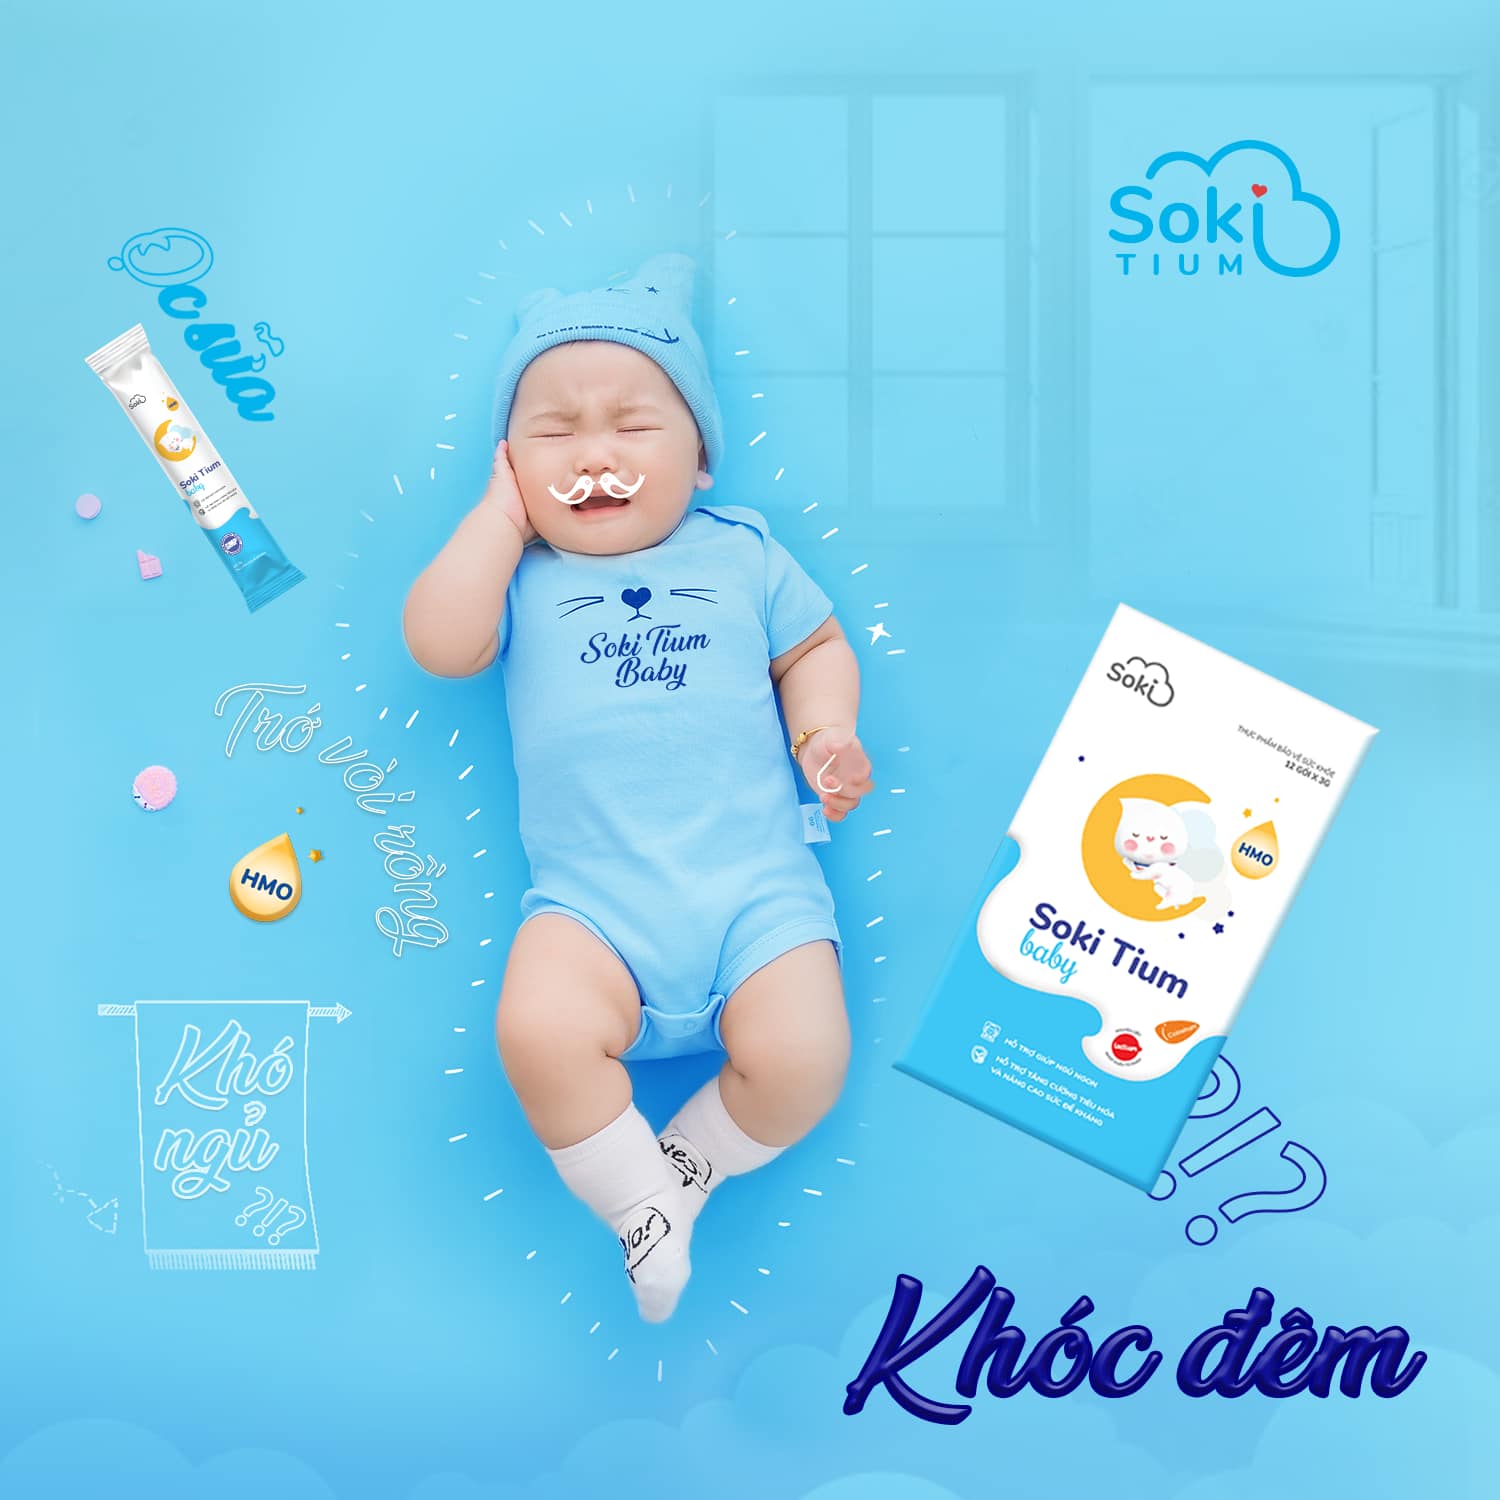 Soki Tium Baby - giải pháp giúp trẻ ngủ ngon giấc